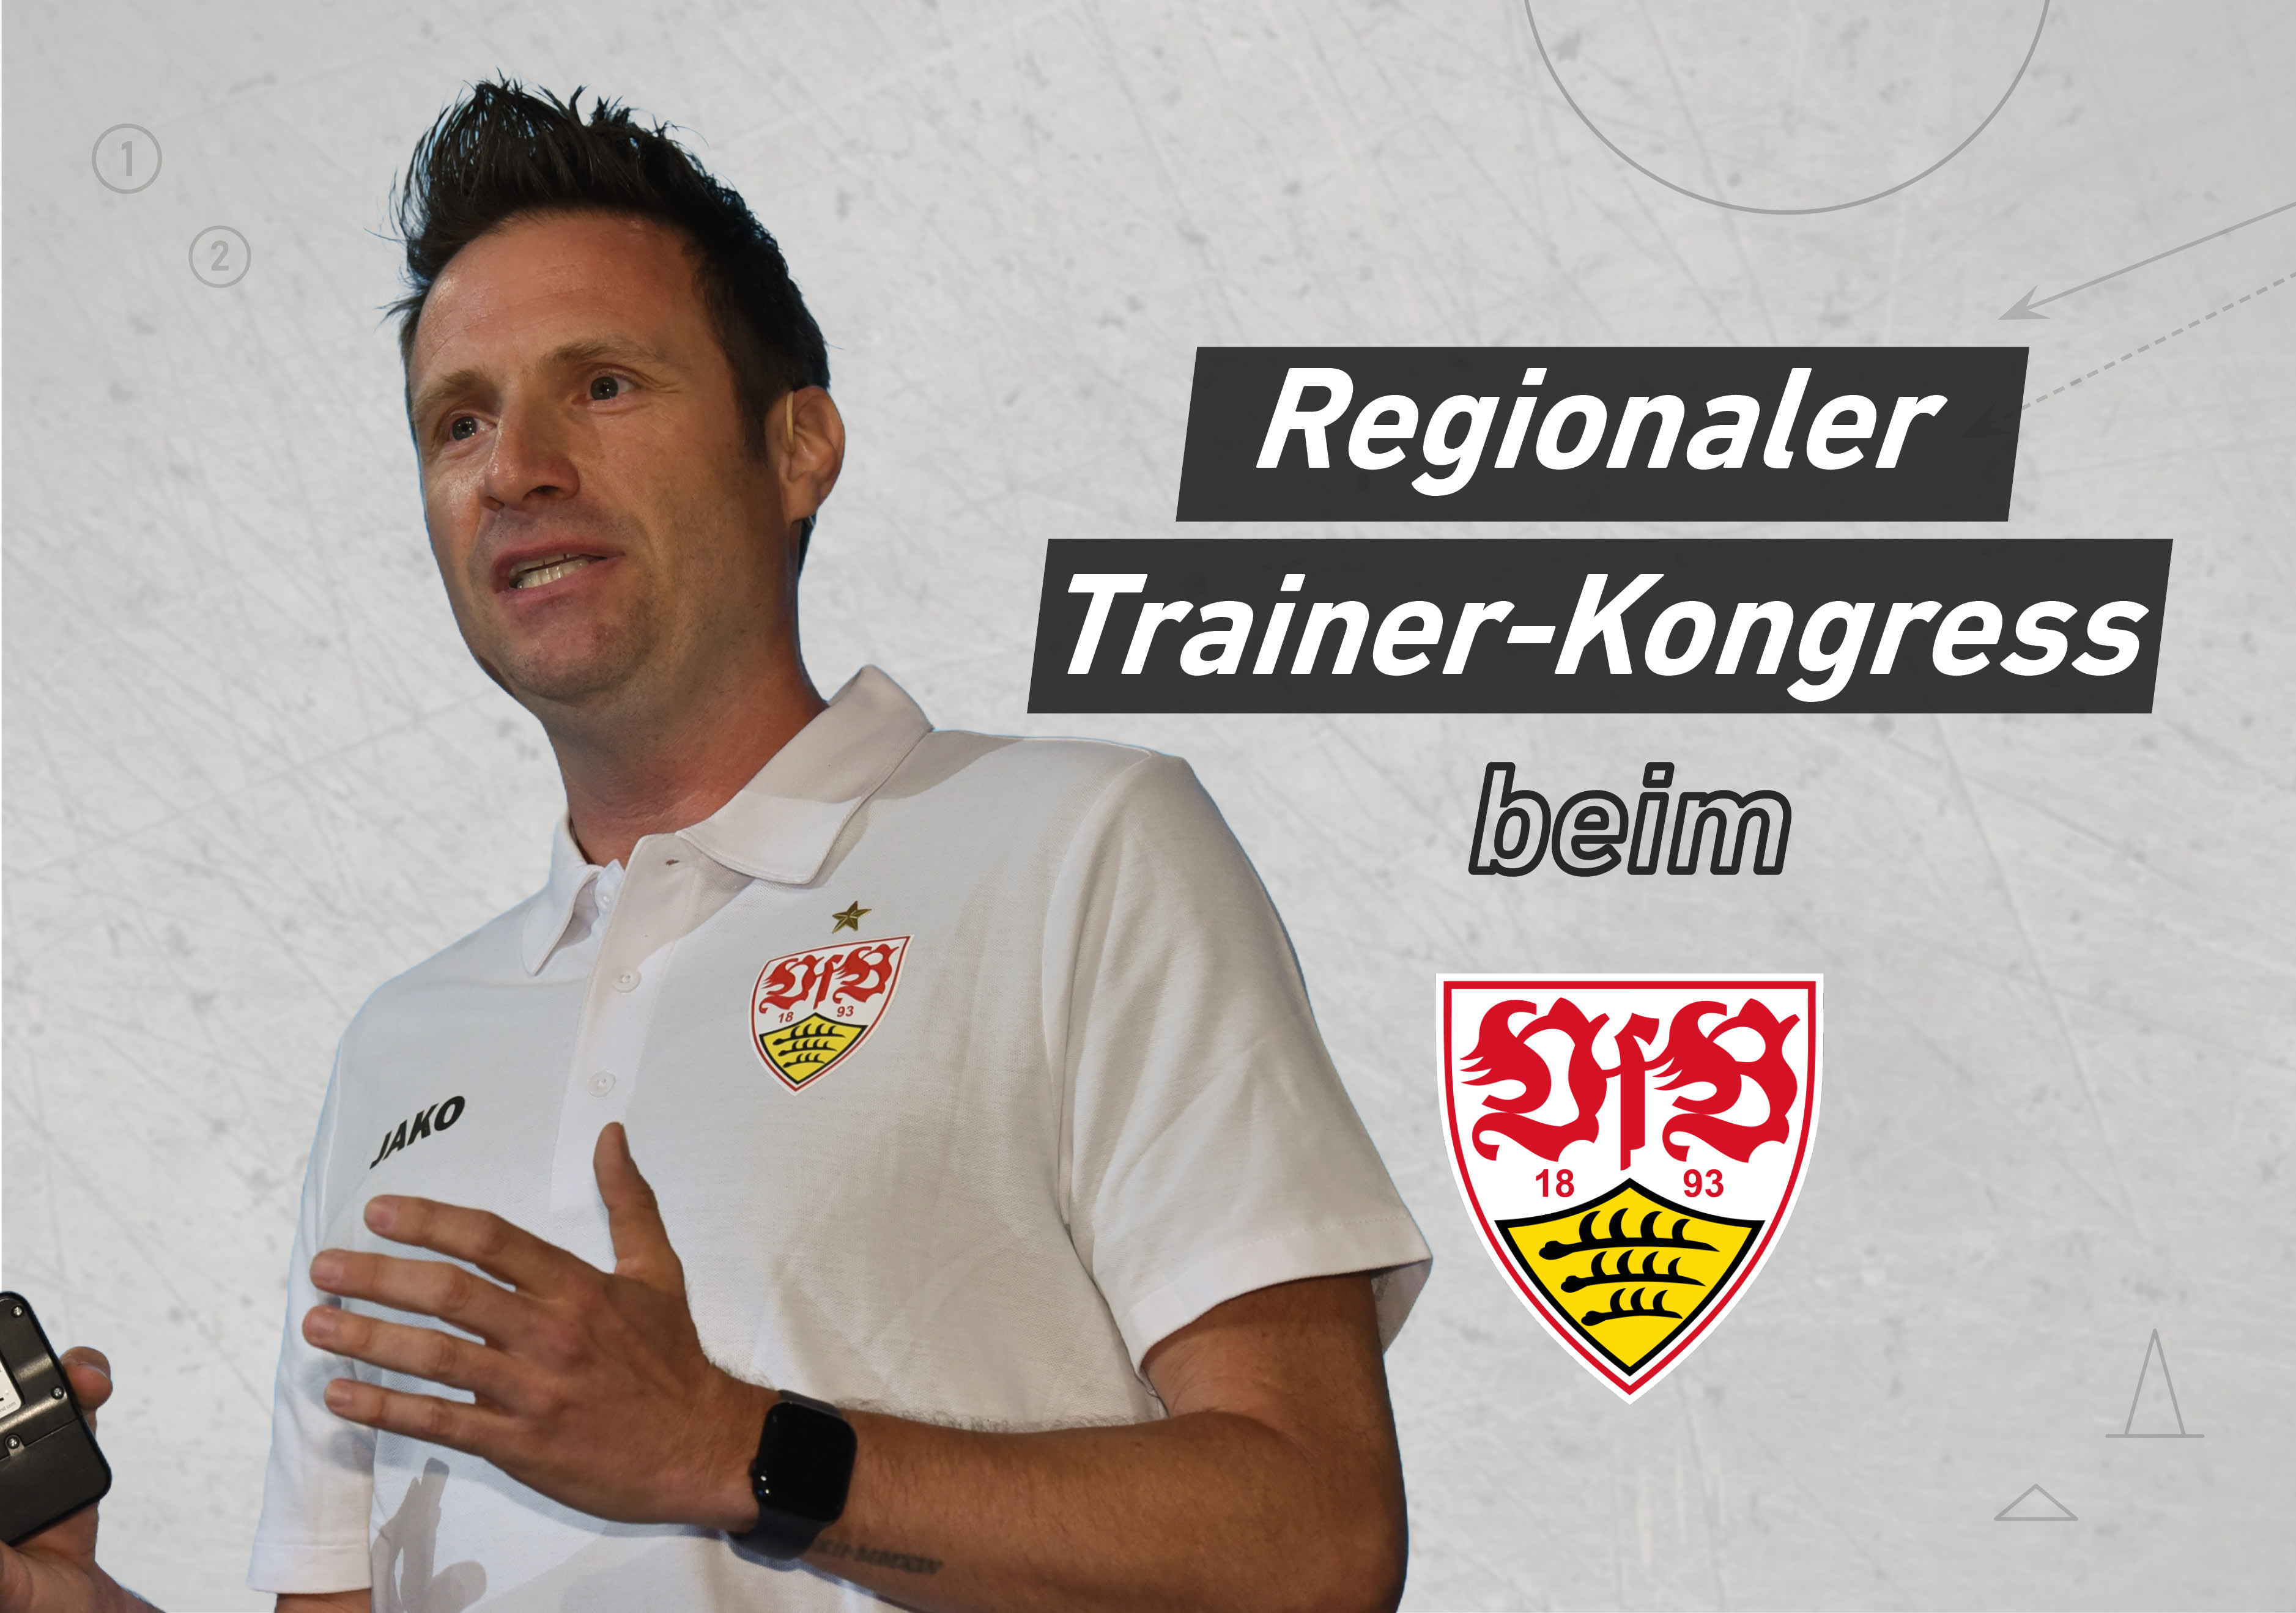 Regionaler Trainer-Kongress beim VfB Stuttgart - Jetzt anmelden!